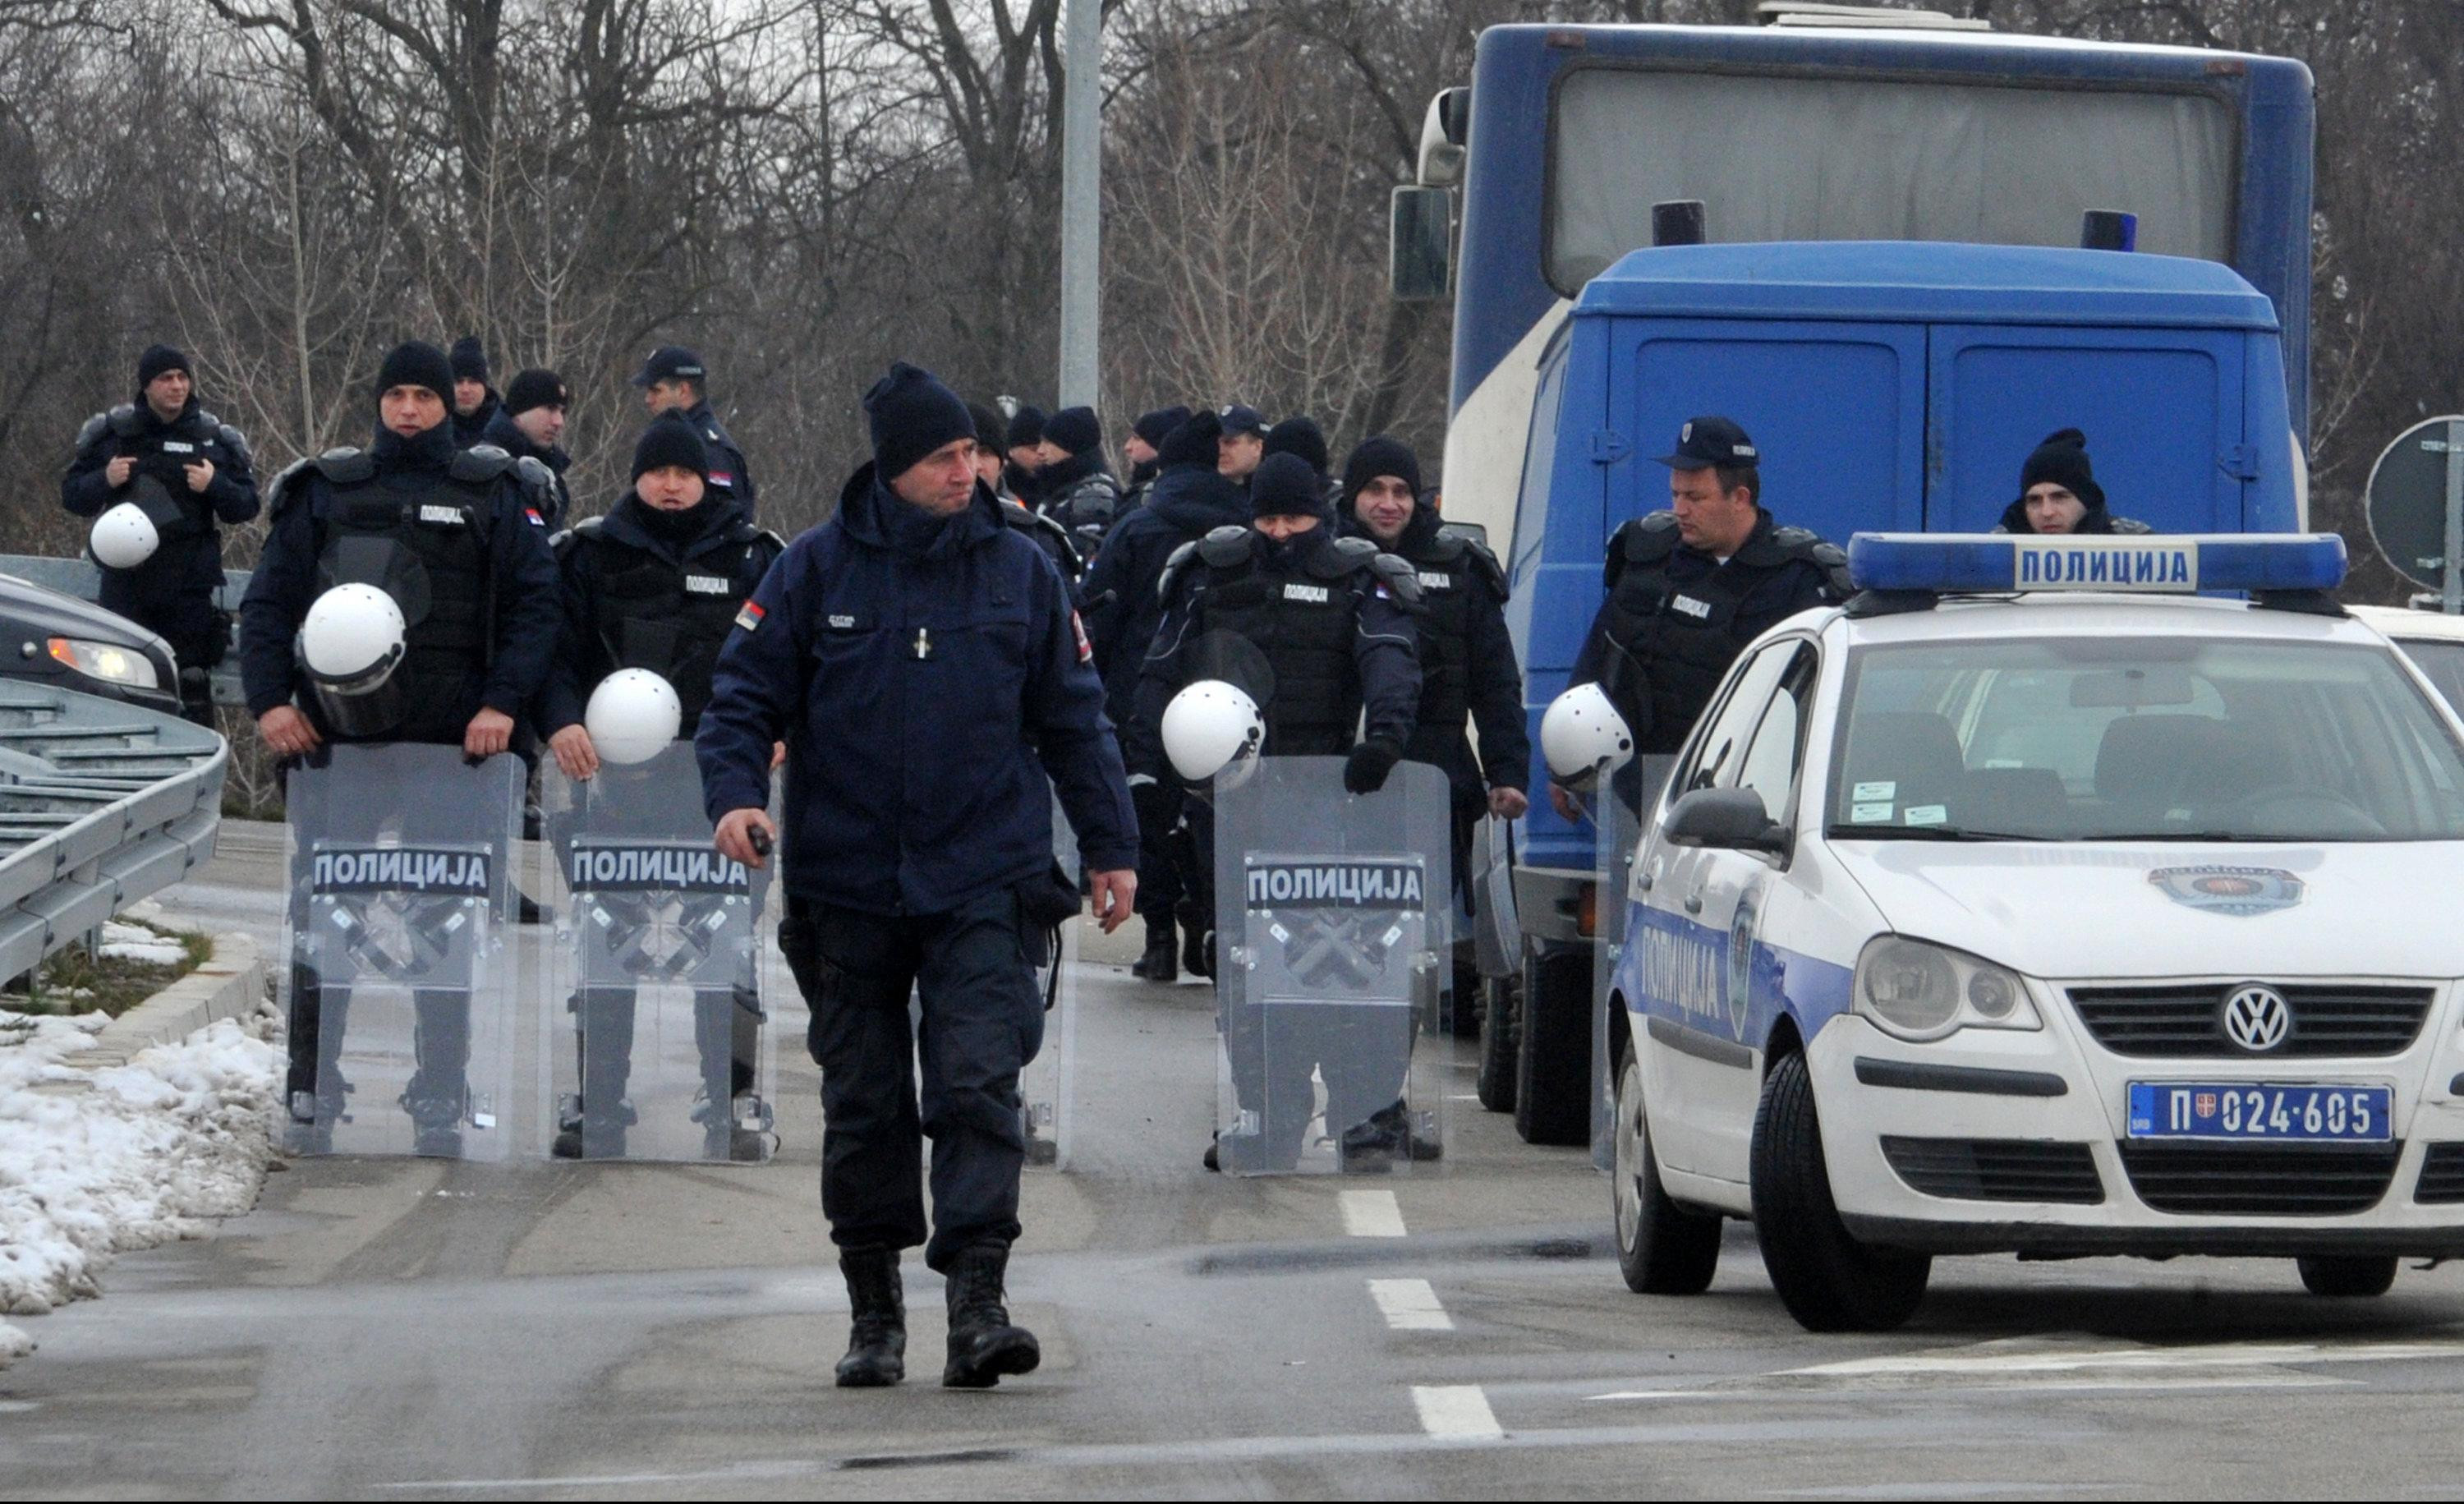 (VIDEO) POLICIJA BLOKIRALA KOVILOVO! Zatvoreni svi prilazi, novinari nepoželjni! 